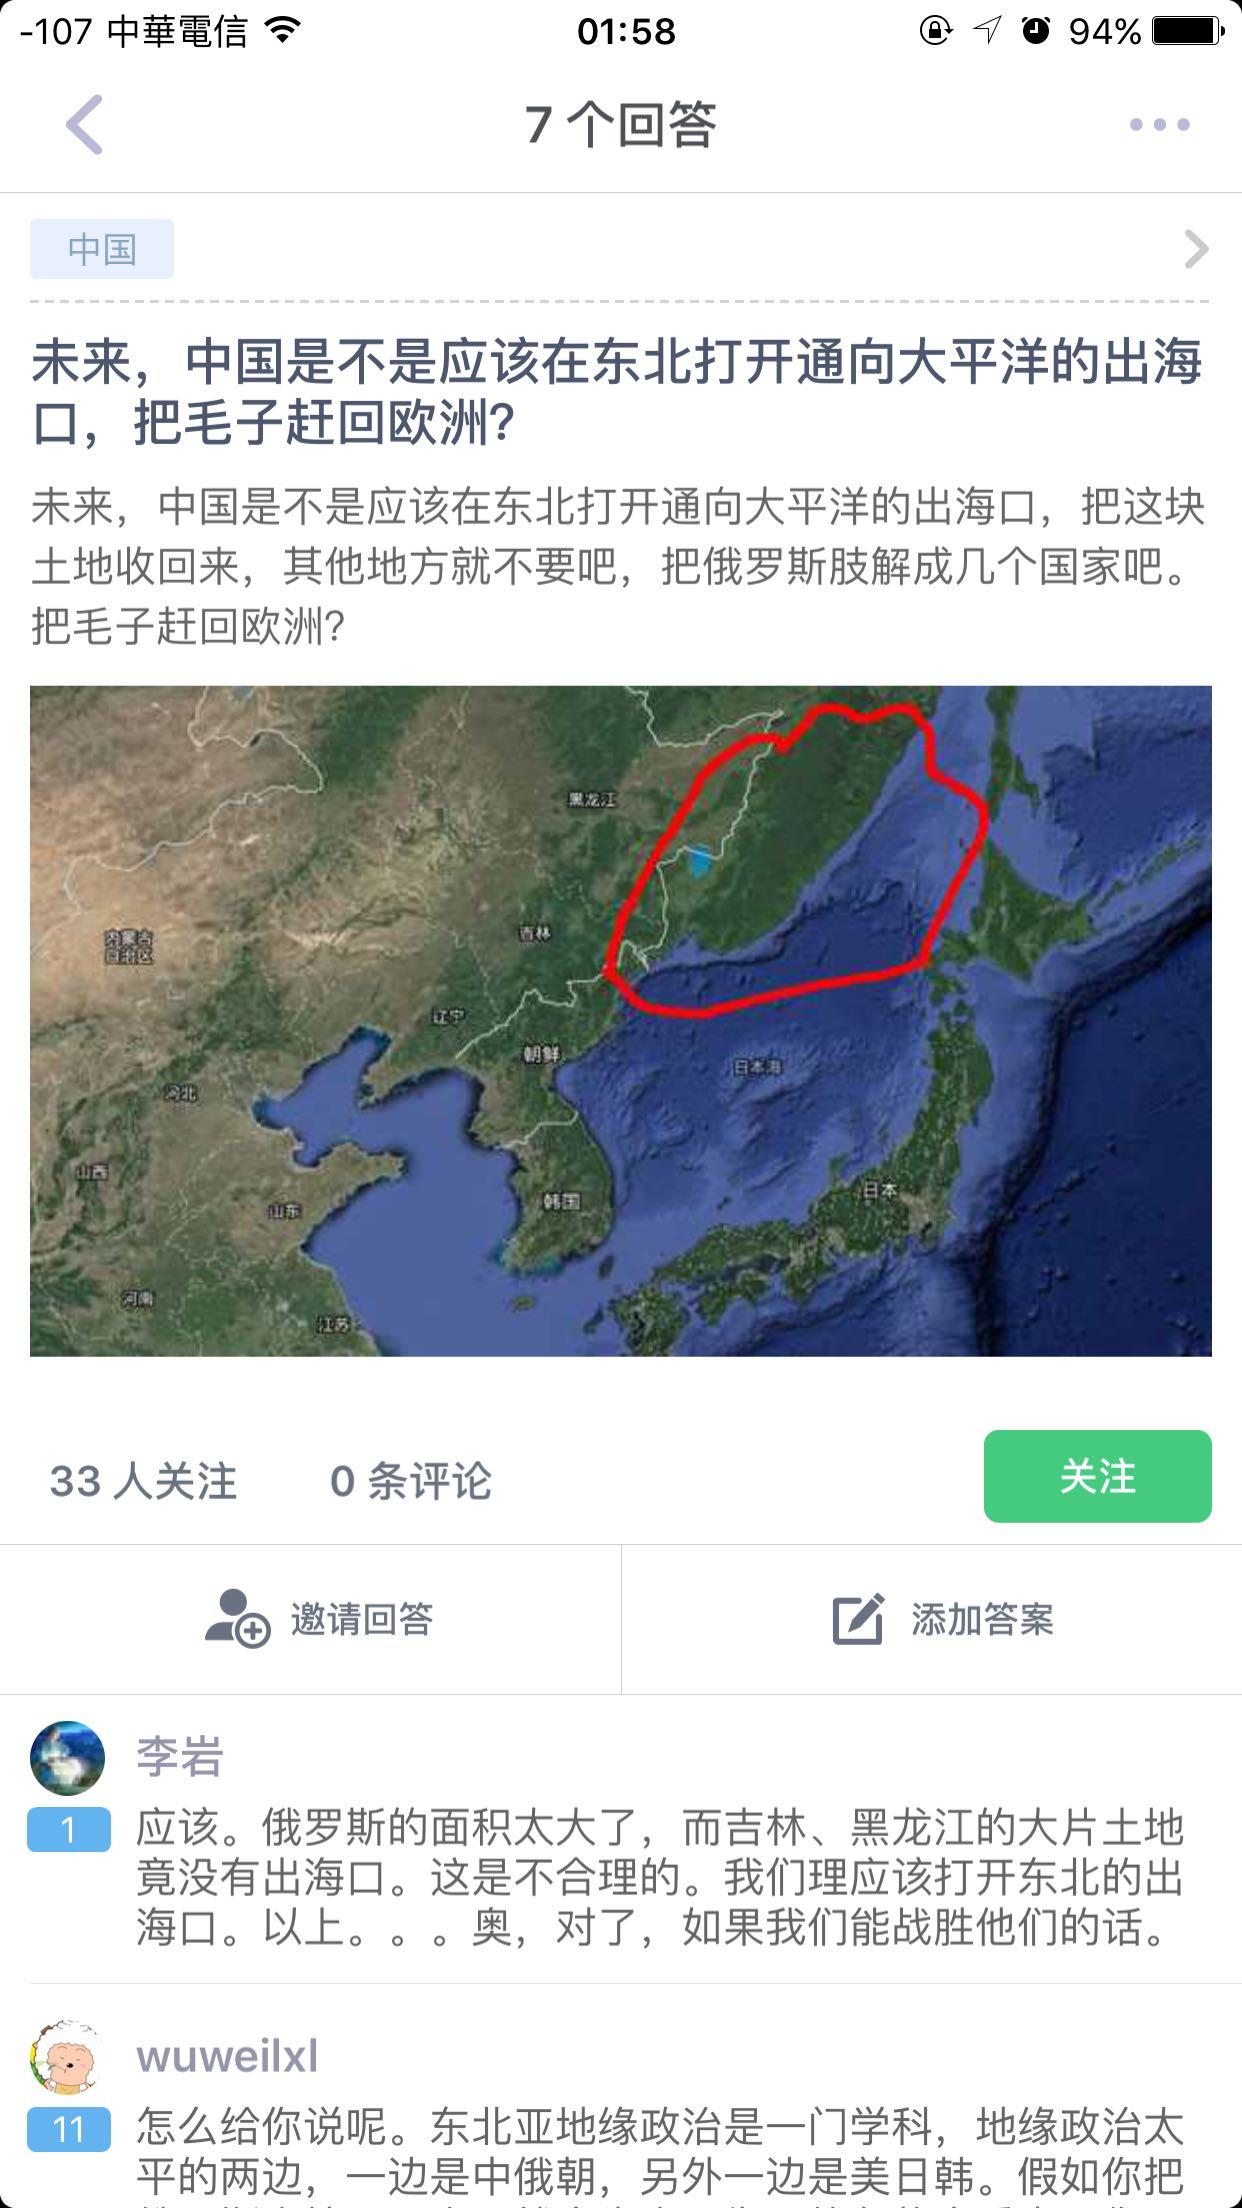 未来,中国是不是应该在东北打开通向大平洋的